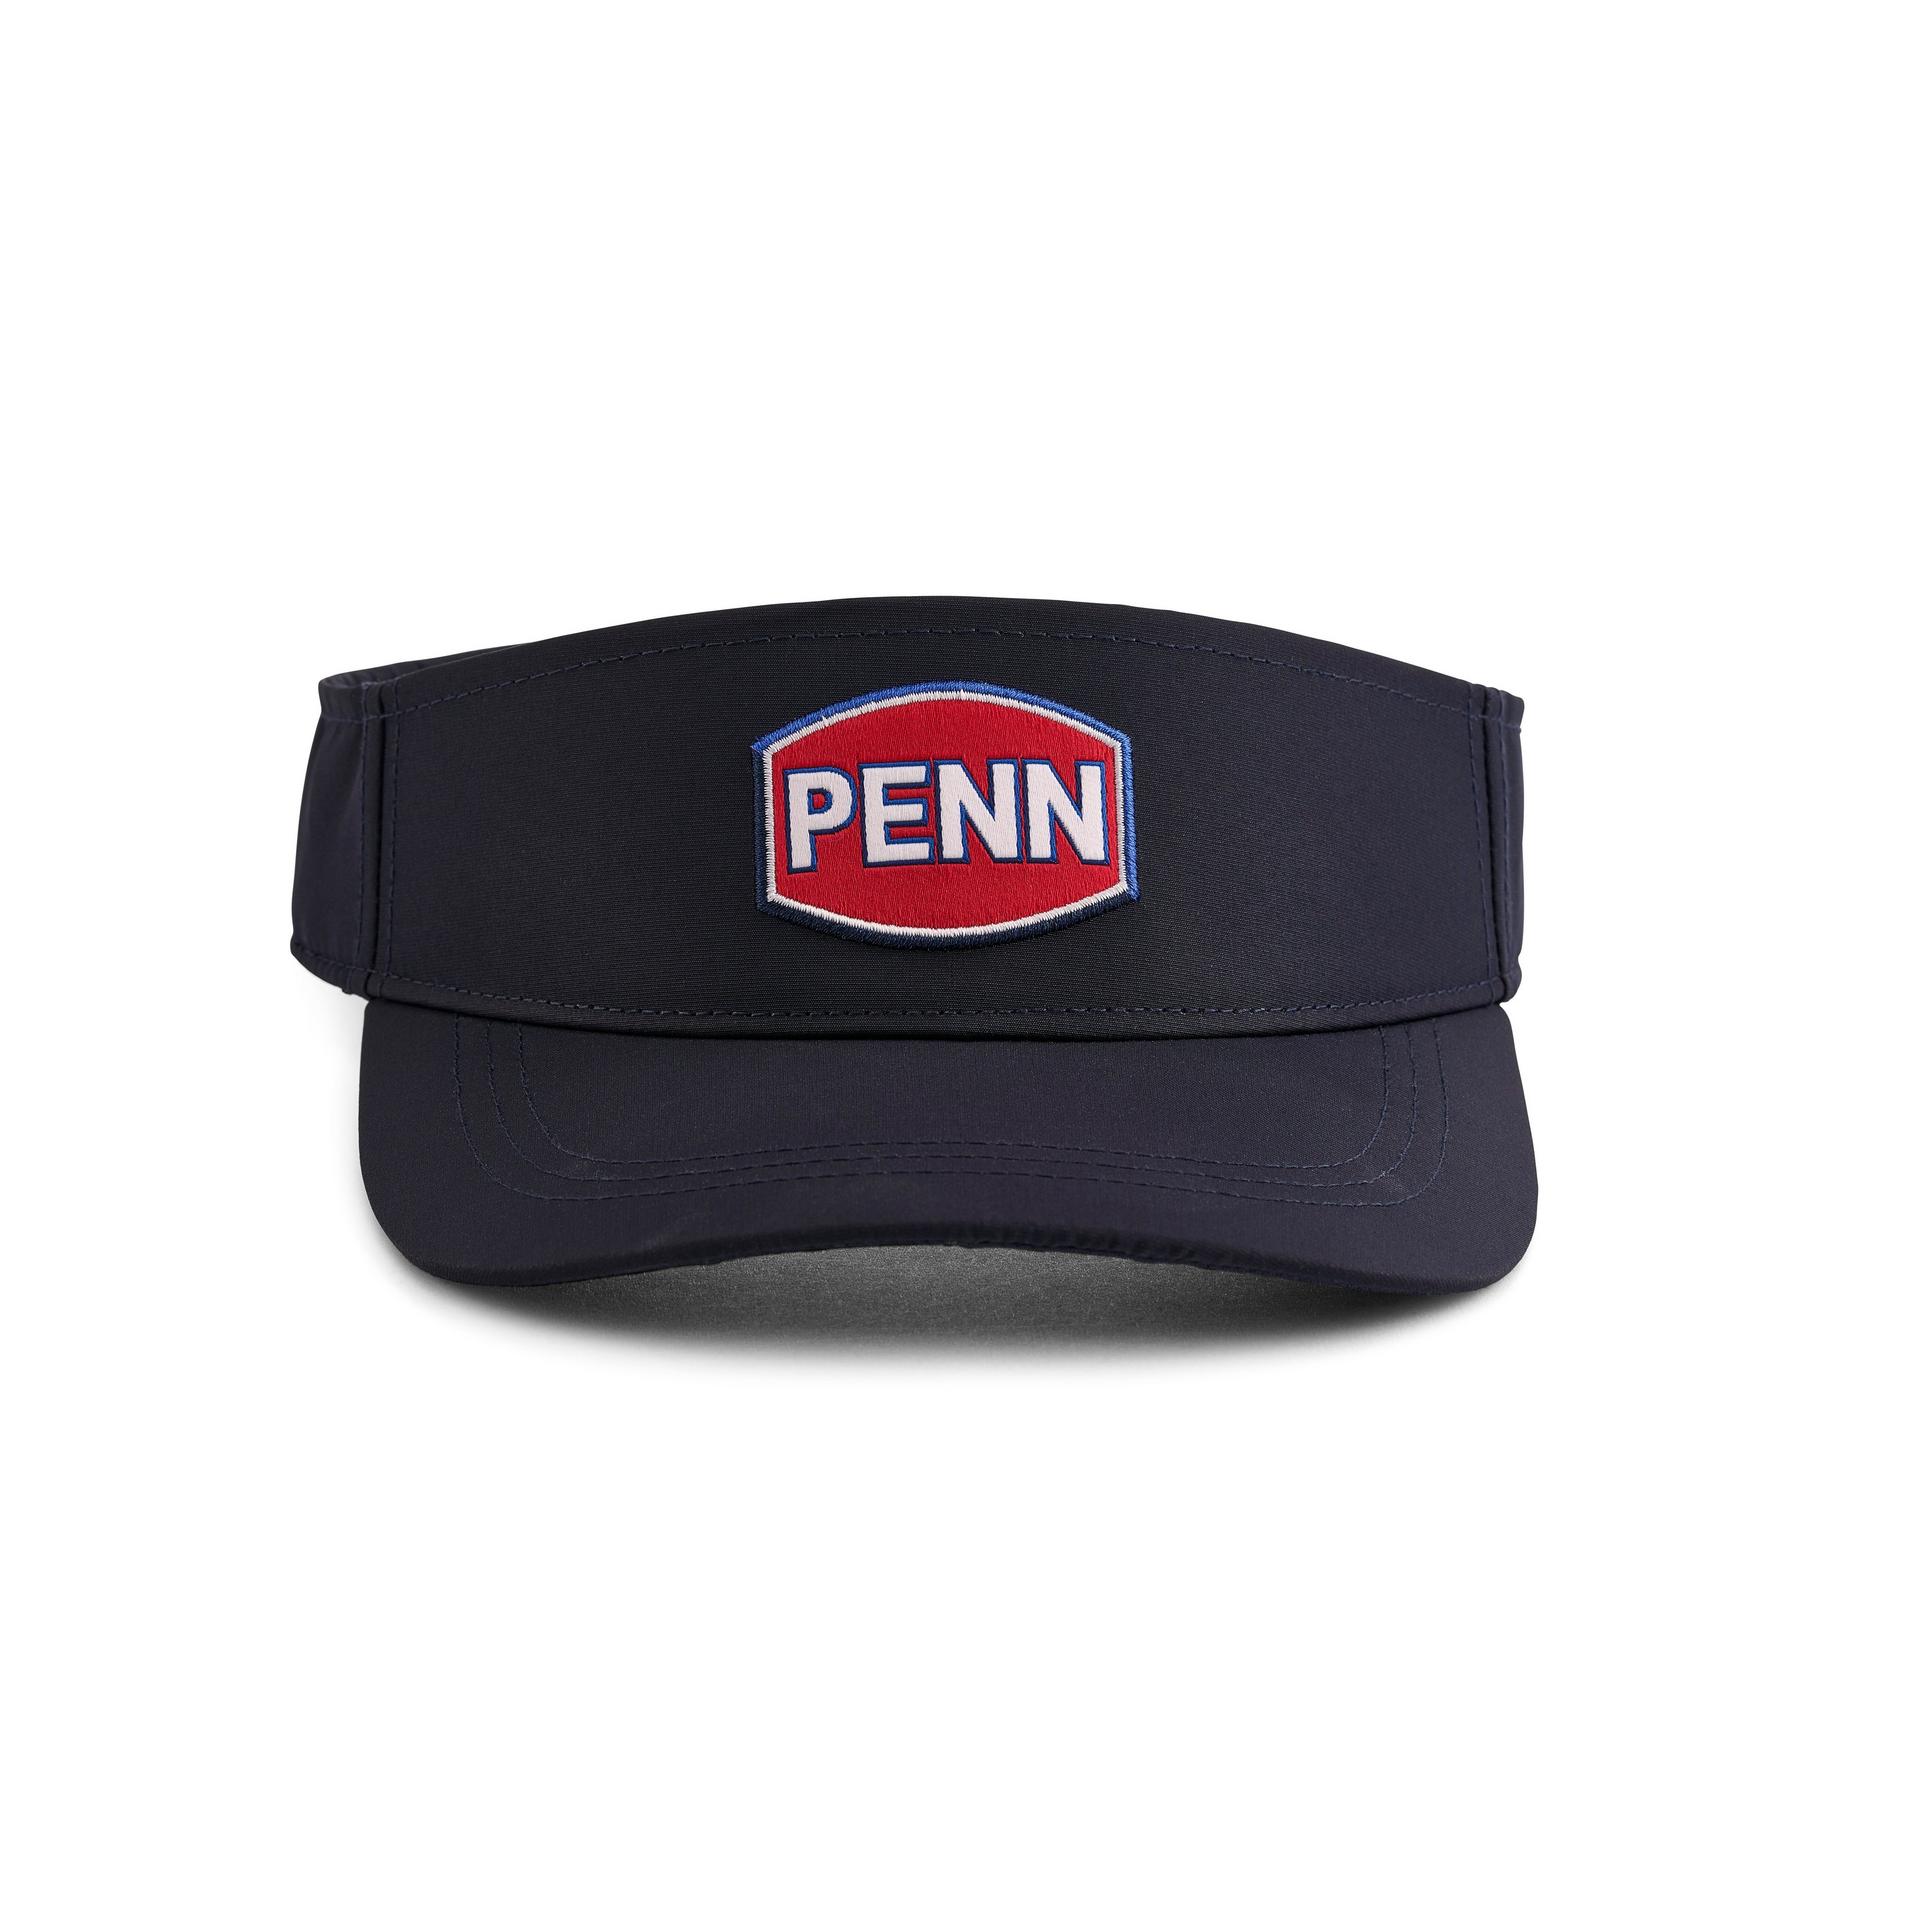 Penn Perf Visor NVY